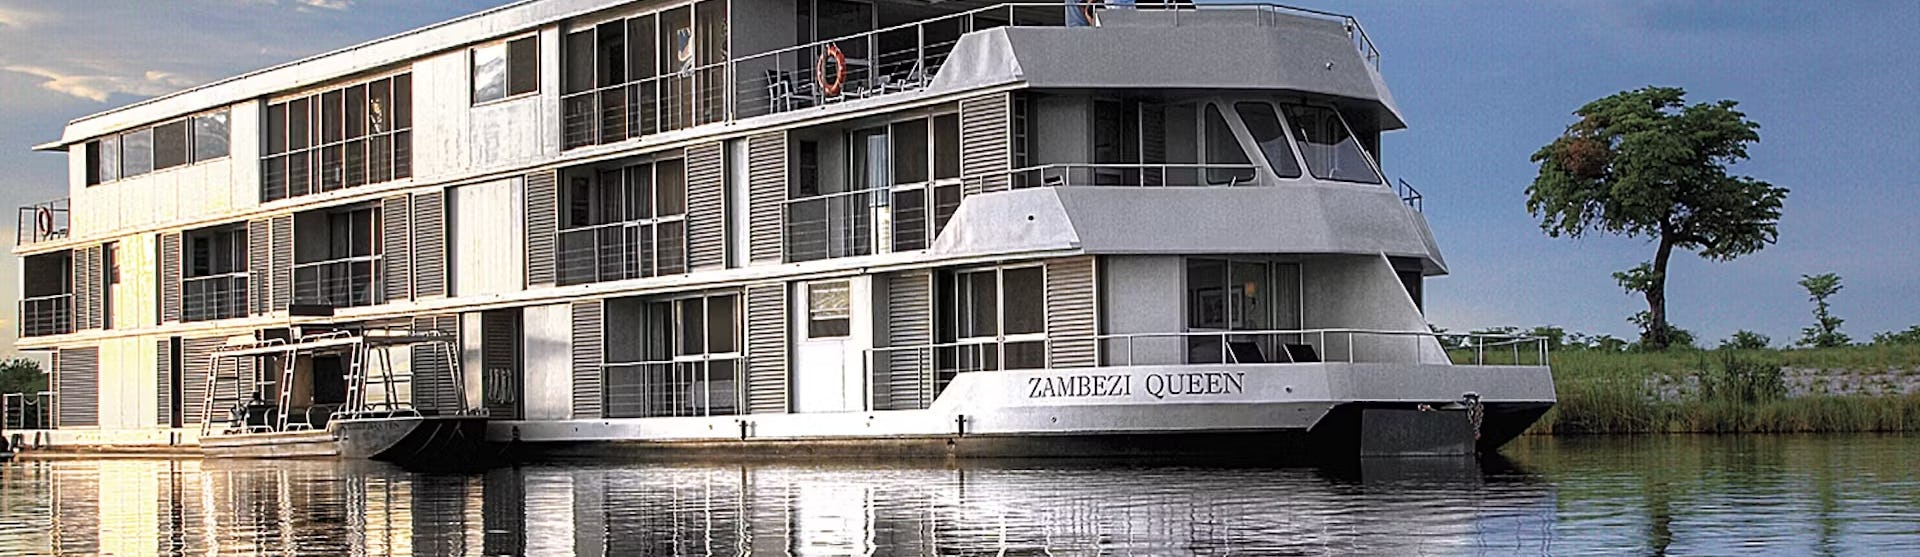 Kreuzfahrtschiff Zambezi Queen während der Fahrt